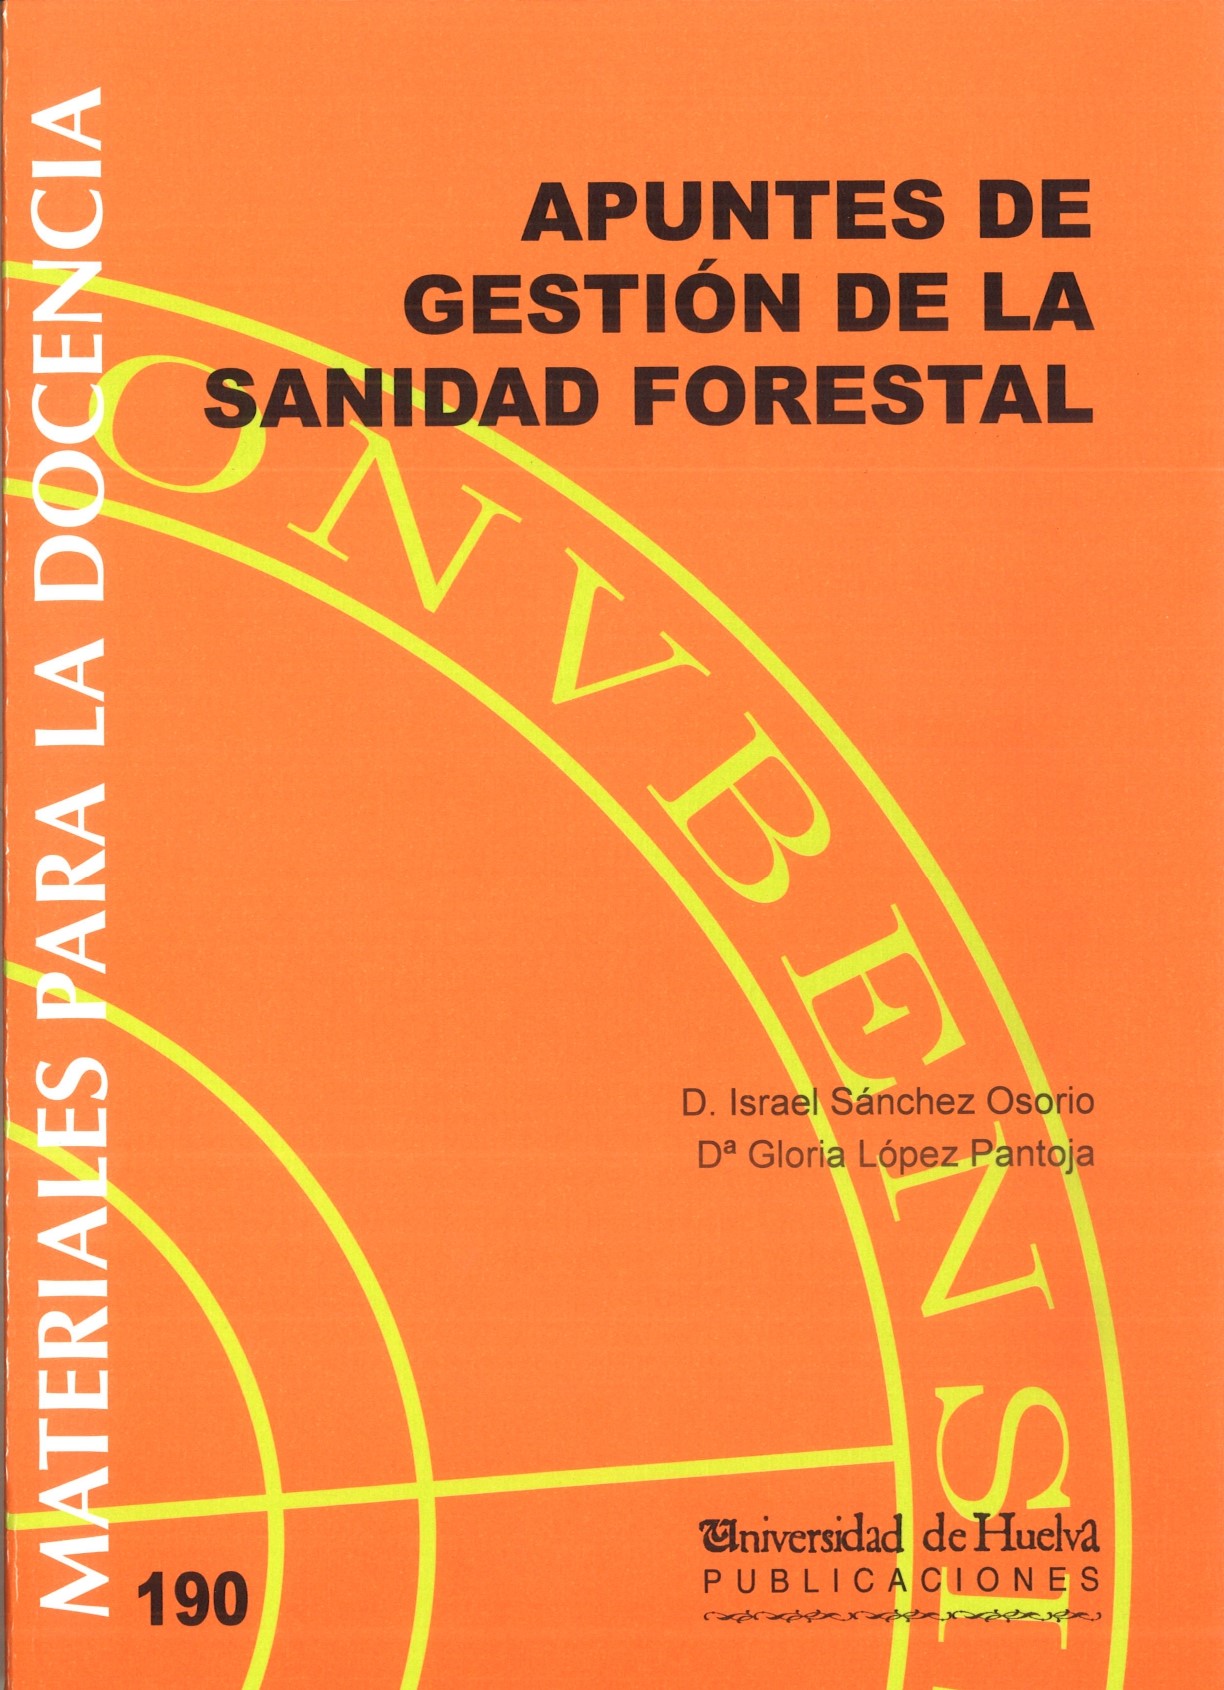 Imagen de portada del libro Apuntes de Gestión de la Sanidad Forestal